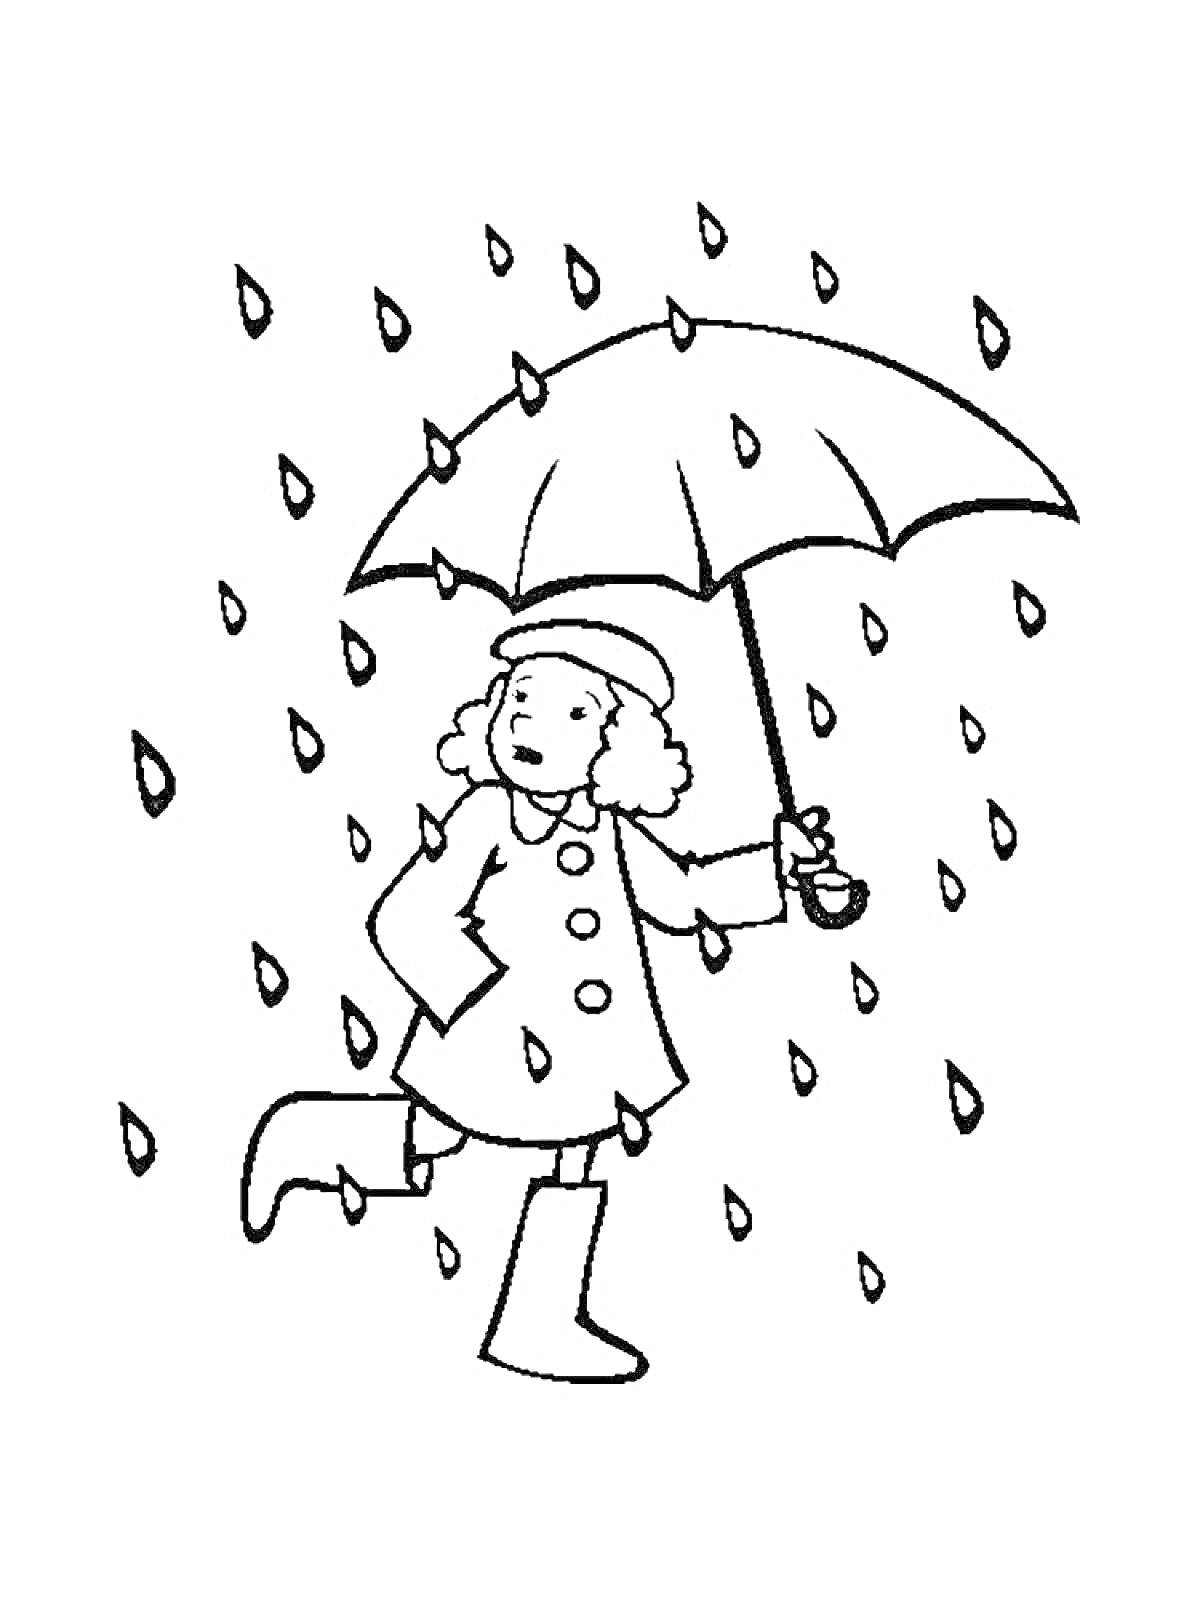 РаскраскаДевочка с зонтиком под дождем